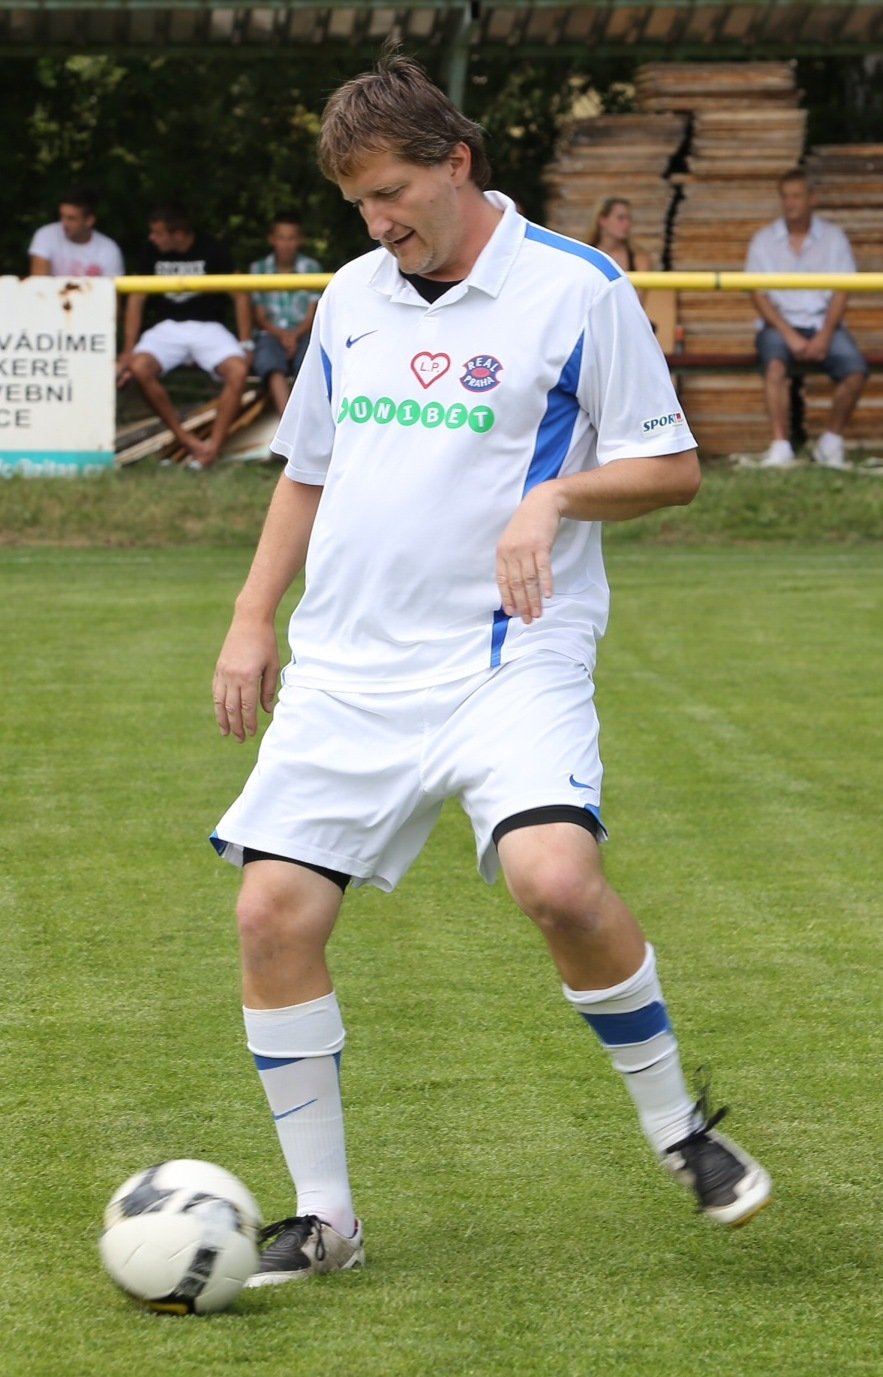 Jaromír Bosák obvykle fotbal spíše komentuje, teď si ho i zahrál.